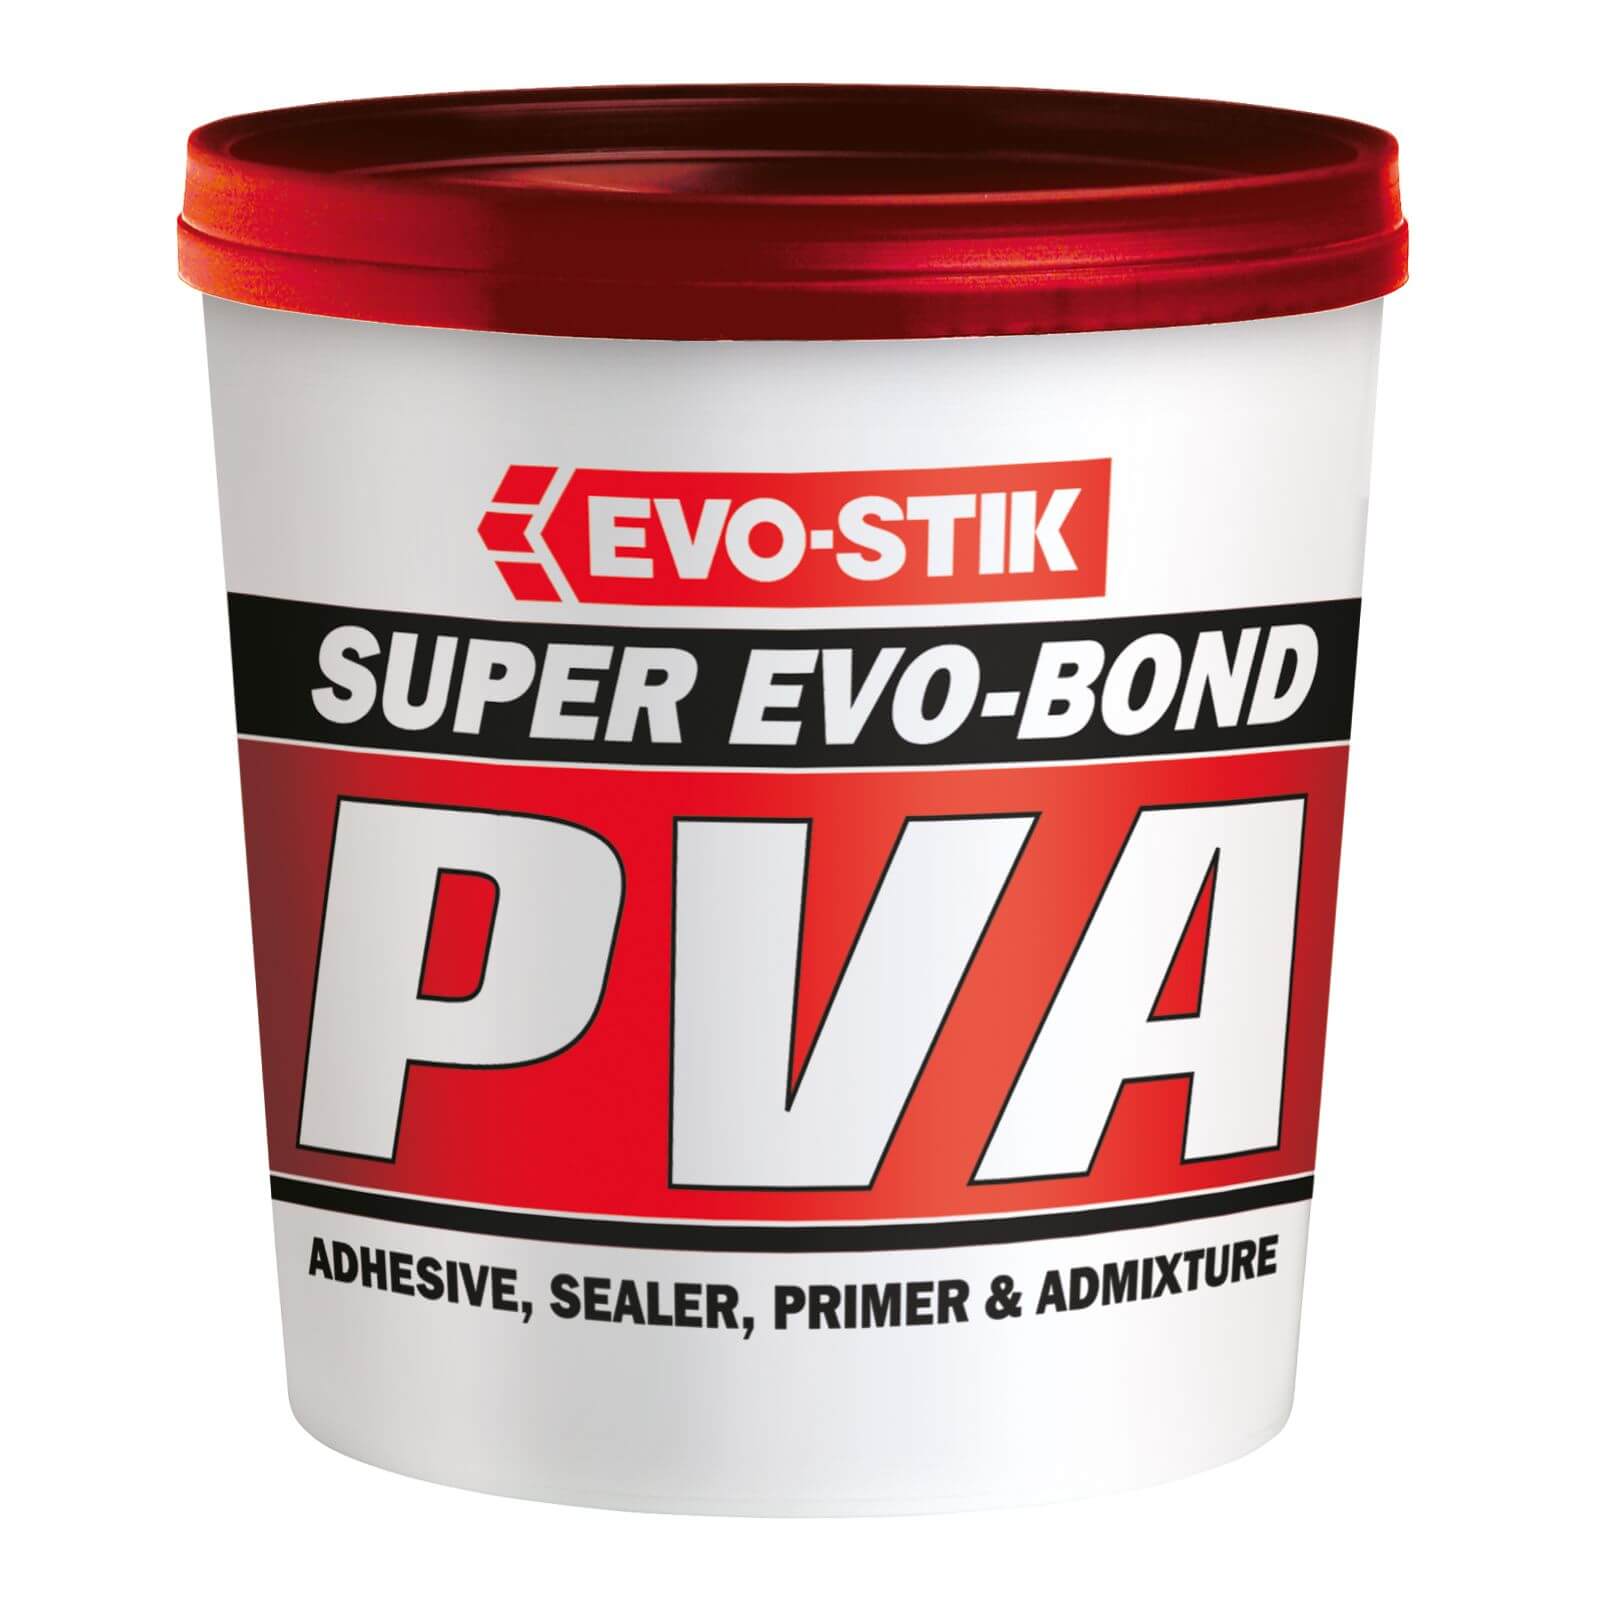 Photo of Evo-bond Pva - 1l